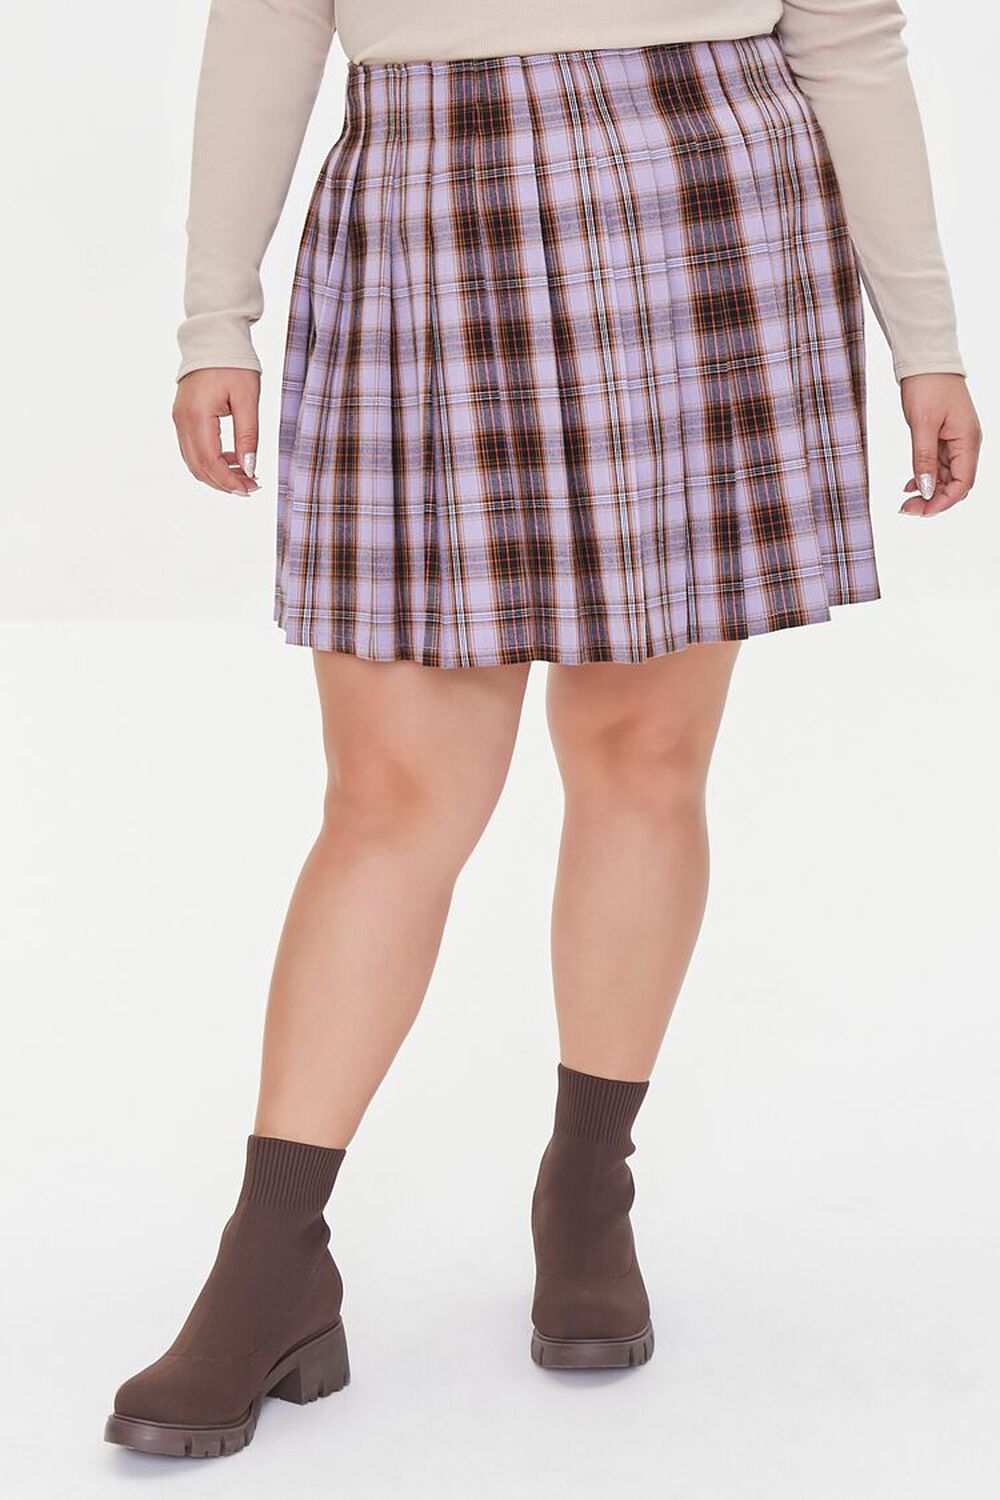 Plus Size Plaid Mini Skirt, image 2